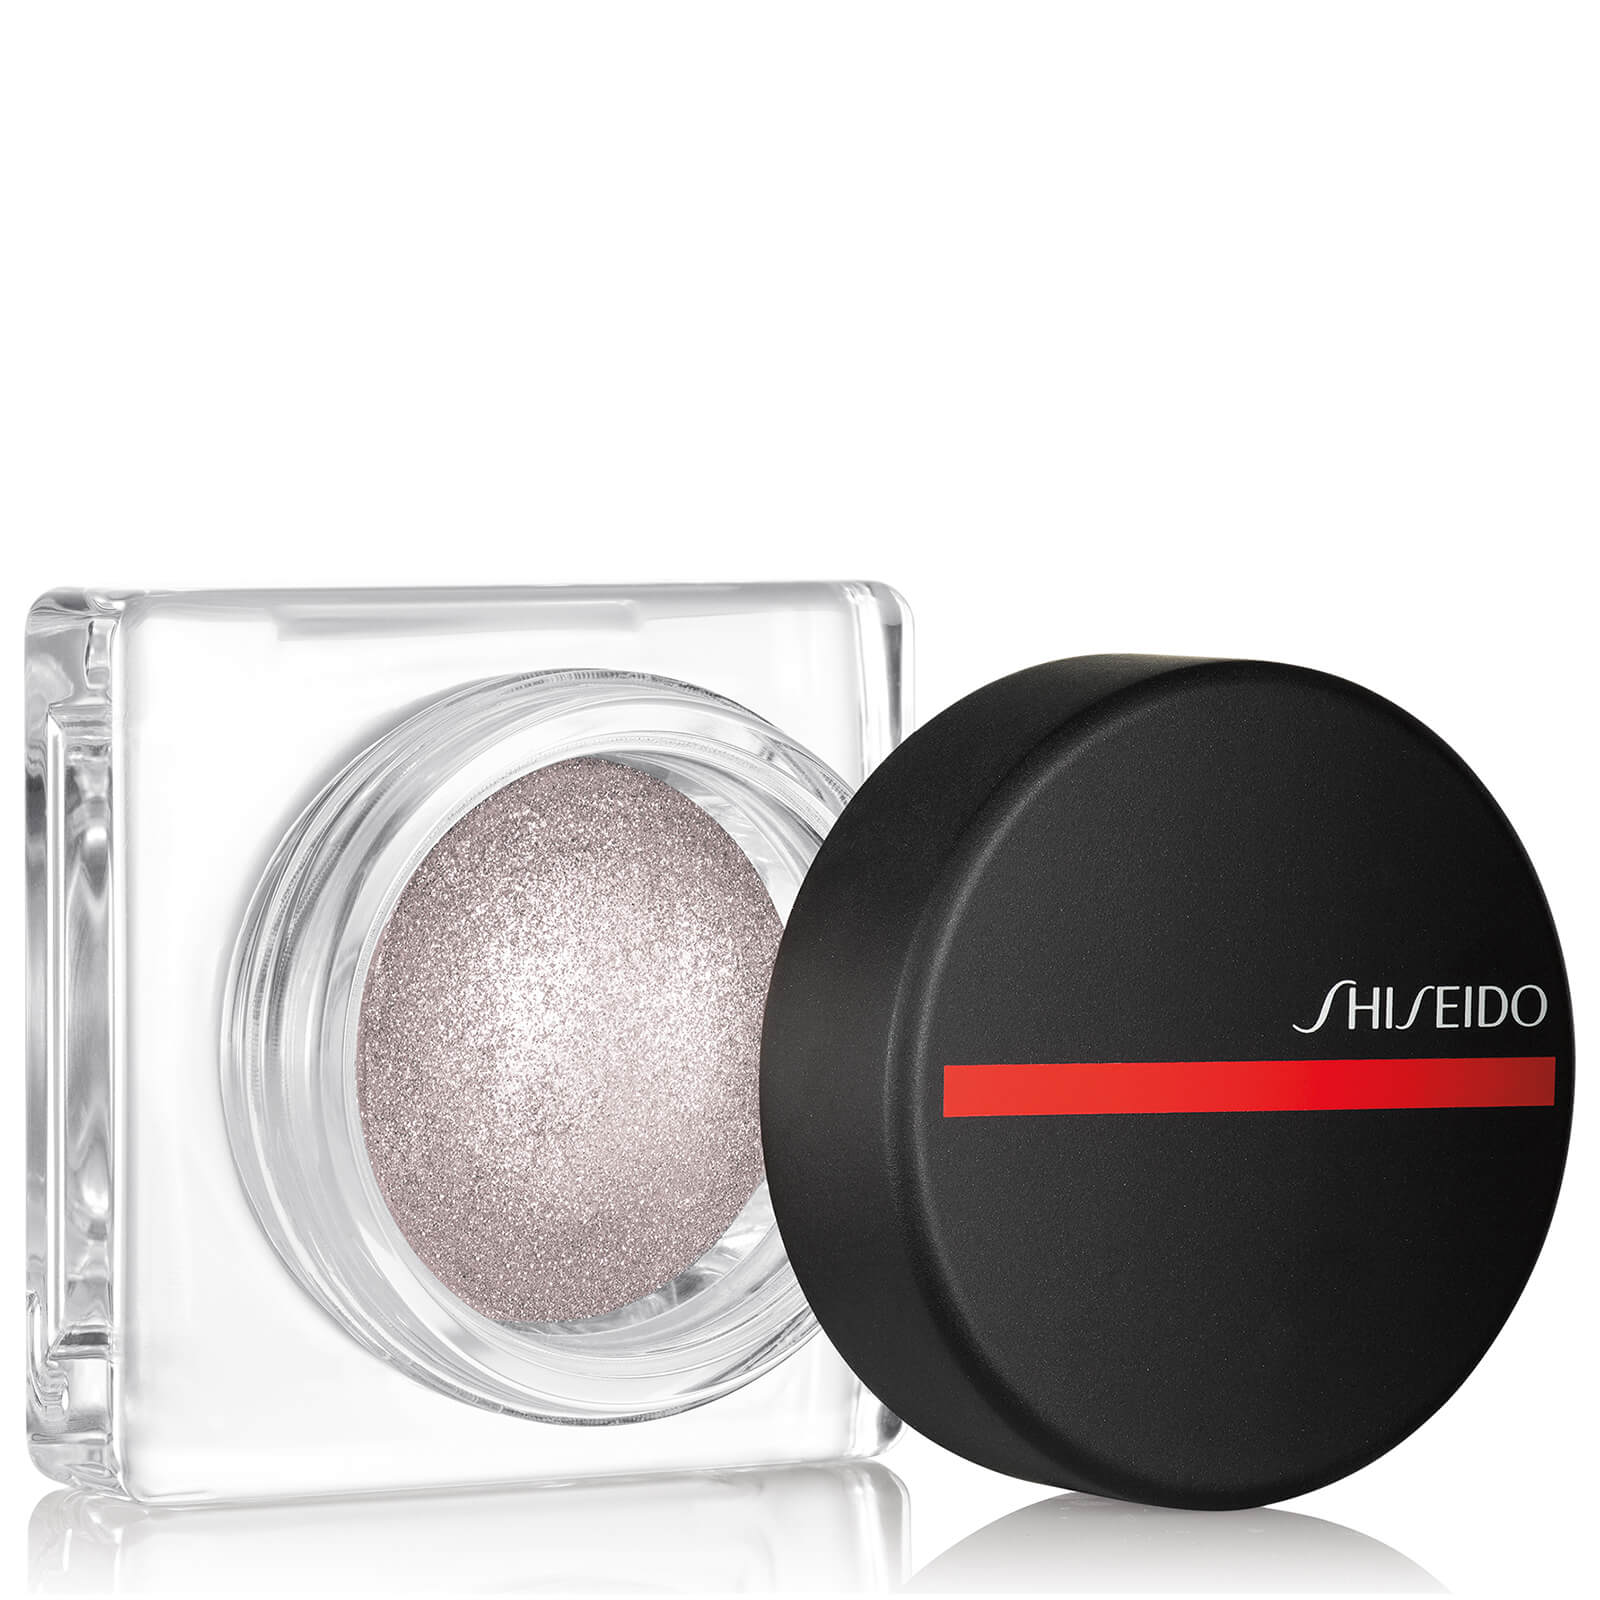 Shiseido Aura Dew (Various Shades) - Lunar 01